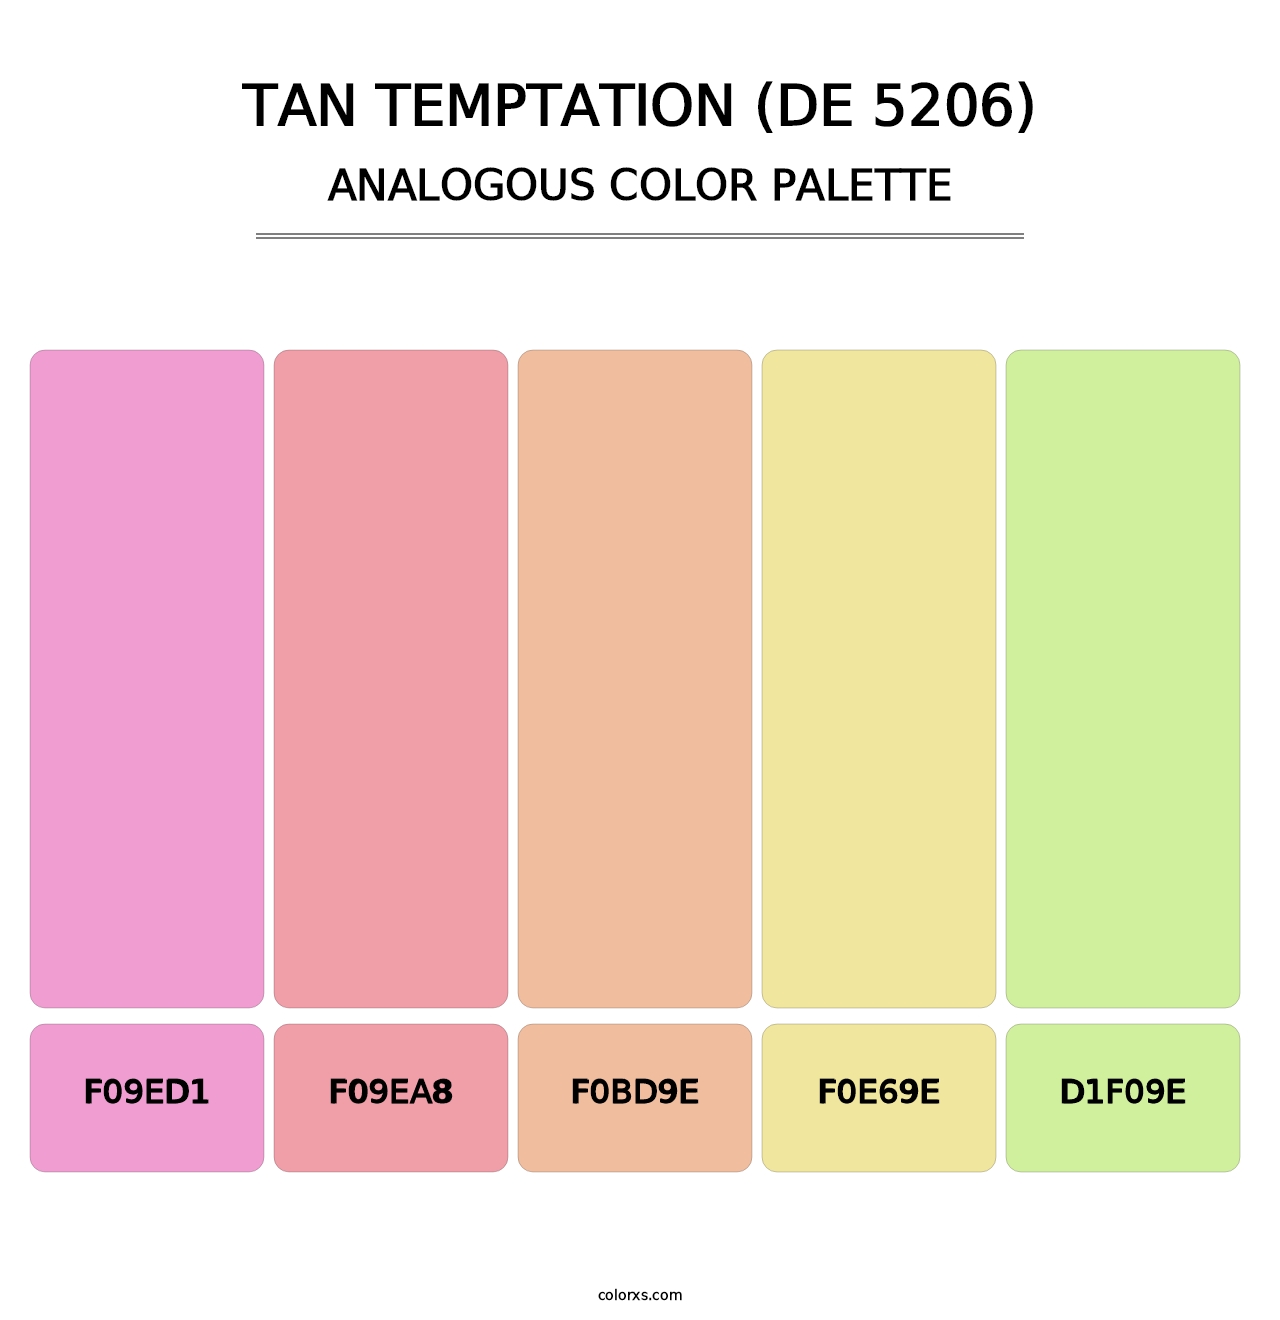 Tan Temptation (DE 5206) - Analogous Color Palette